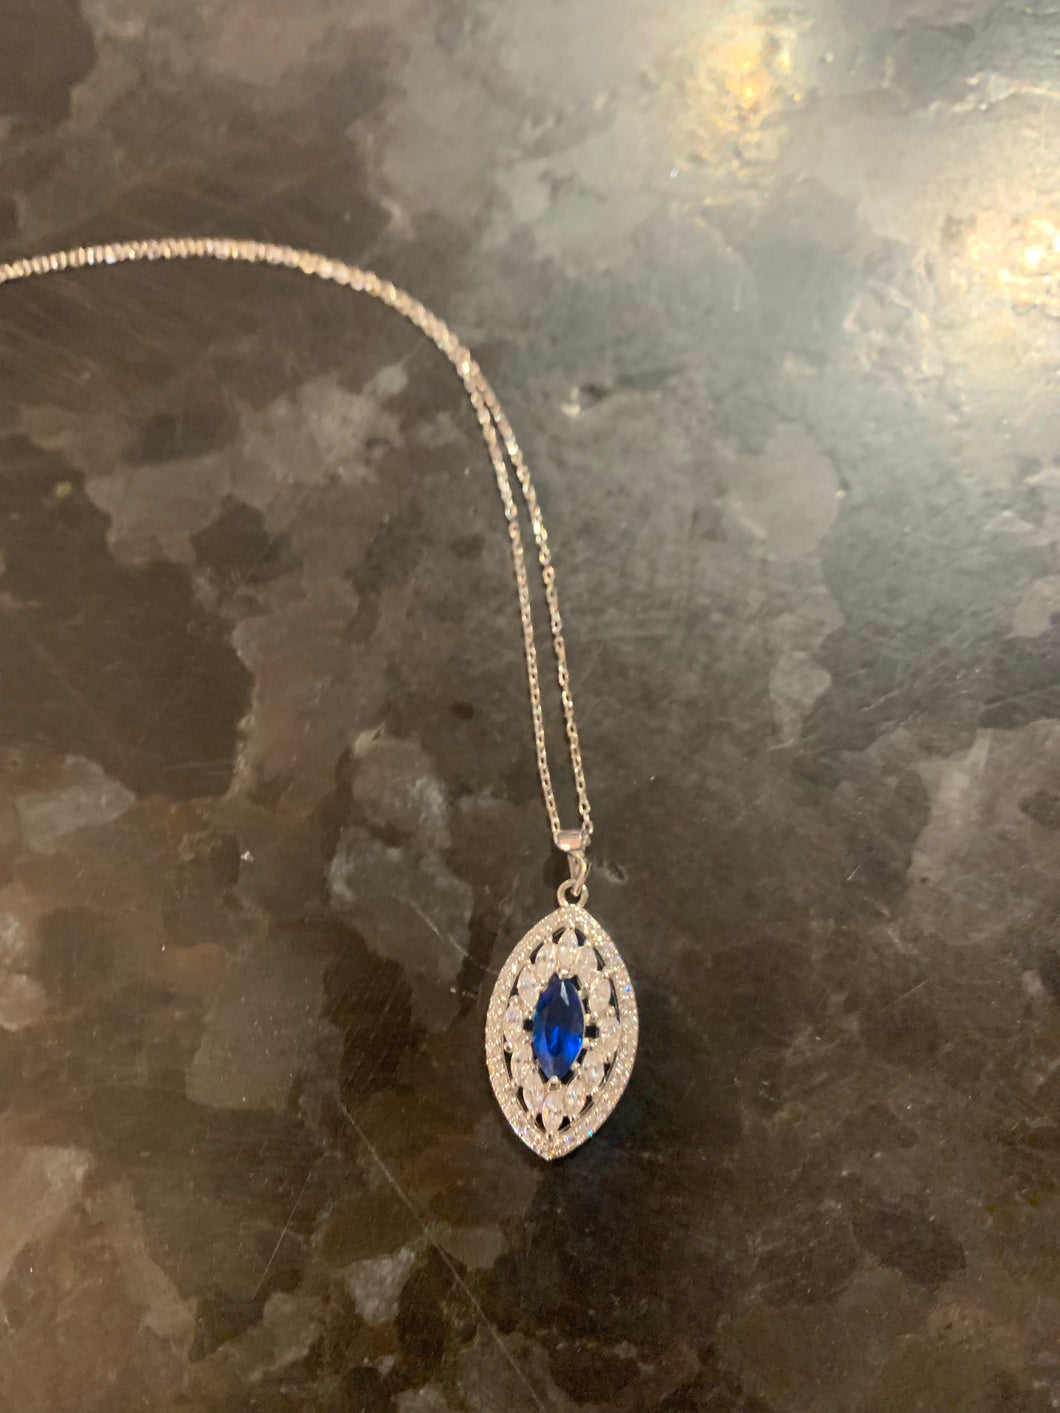 Saphire c/z pendant necklace